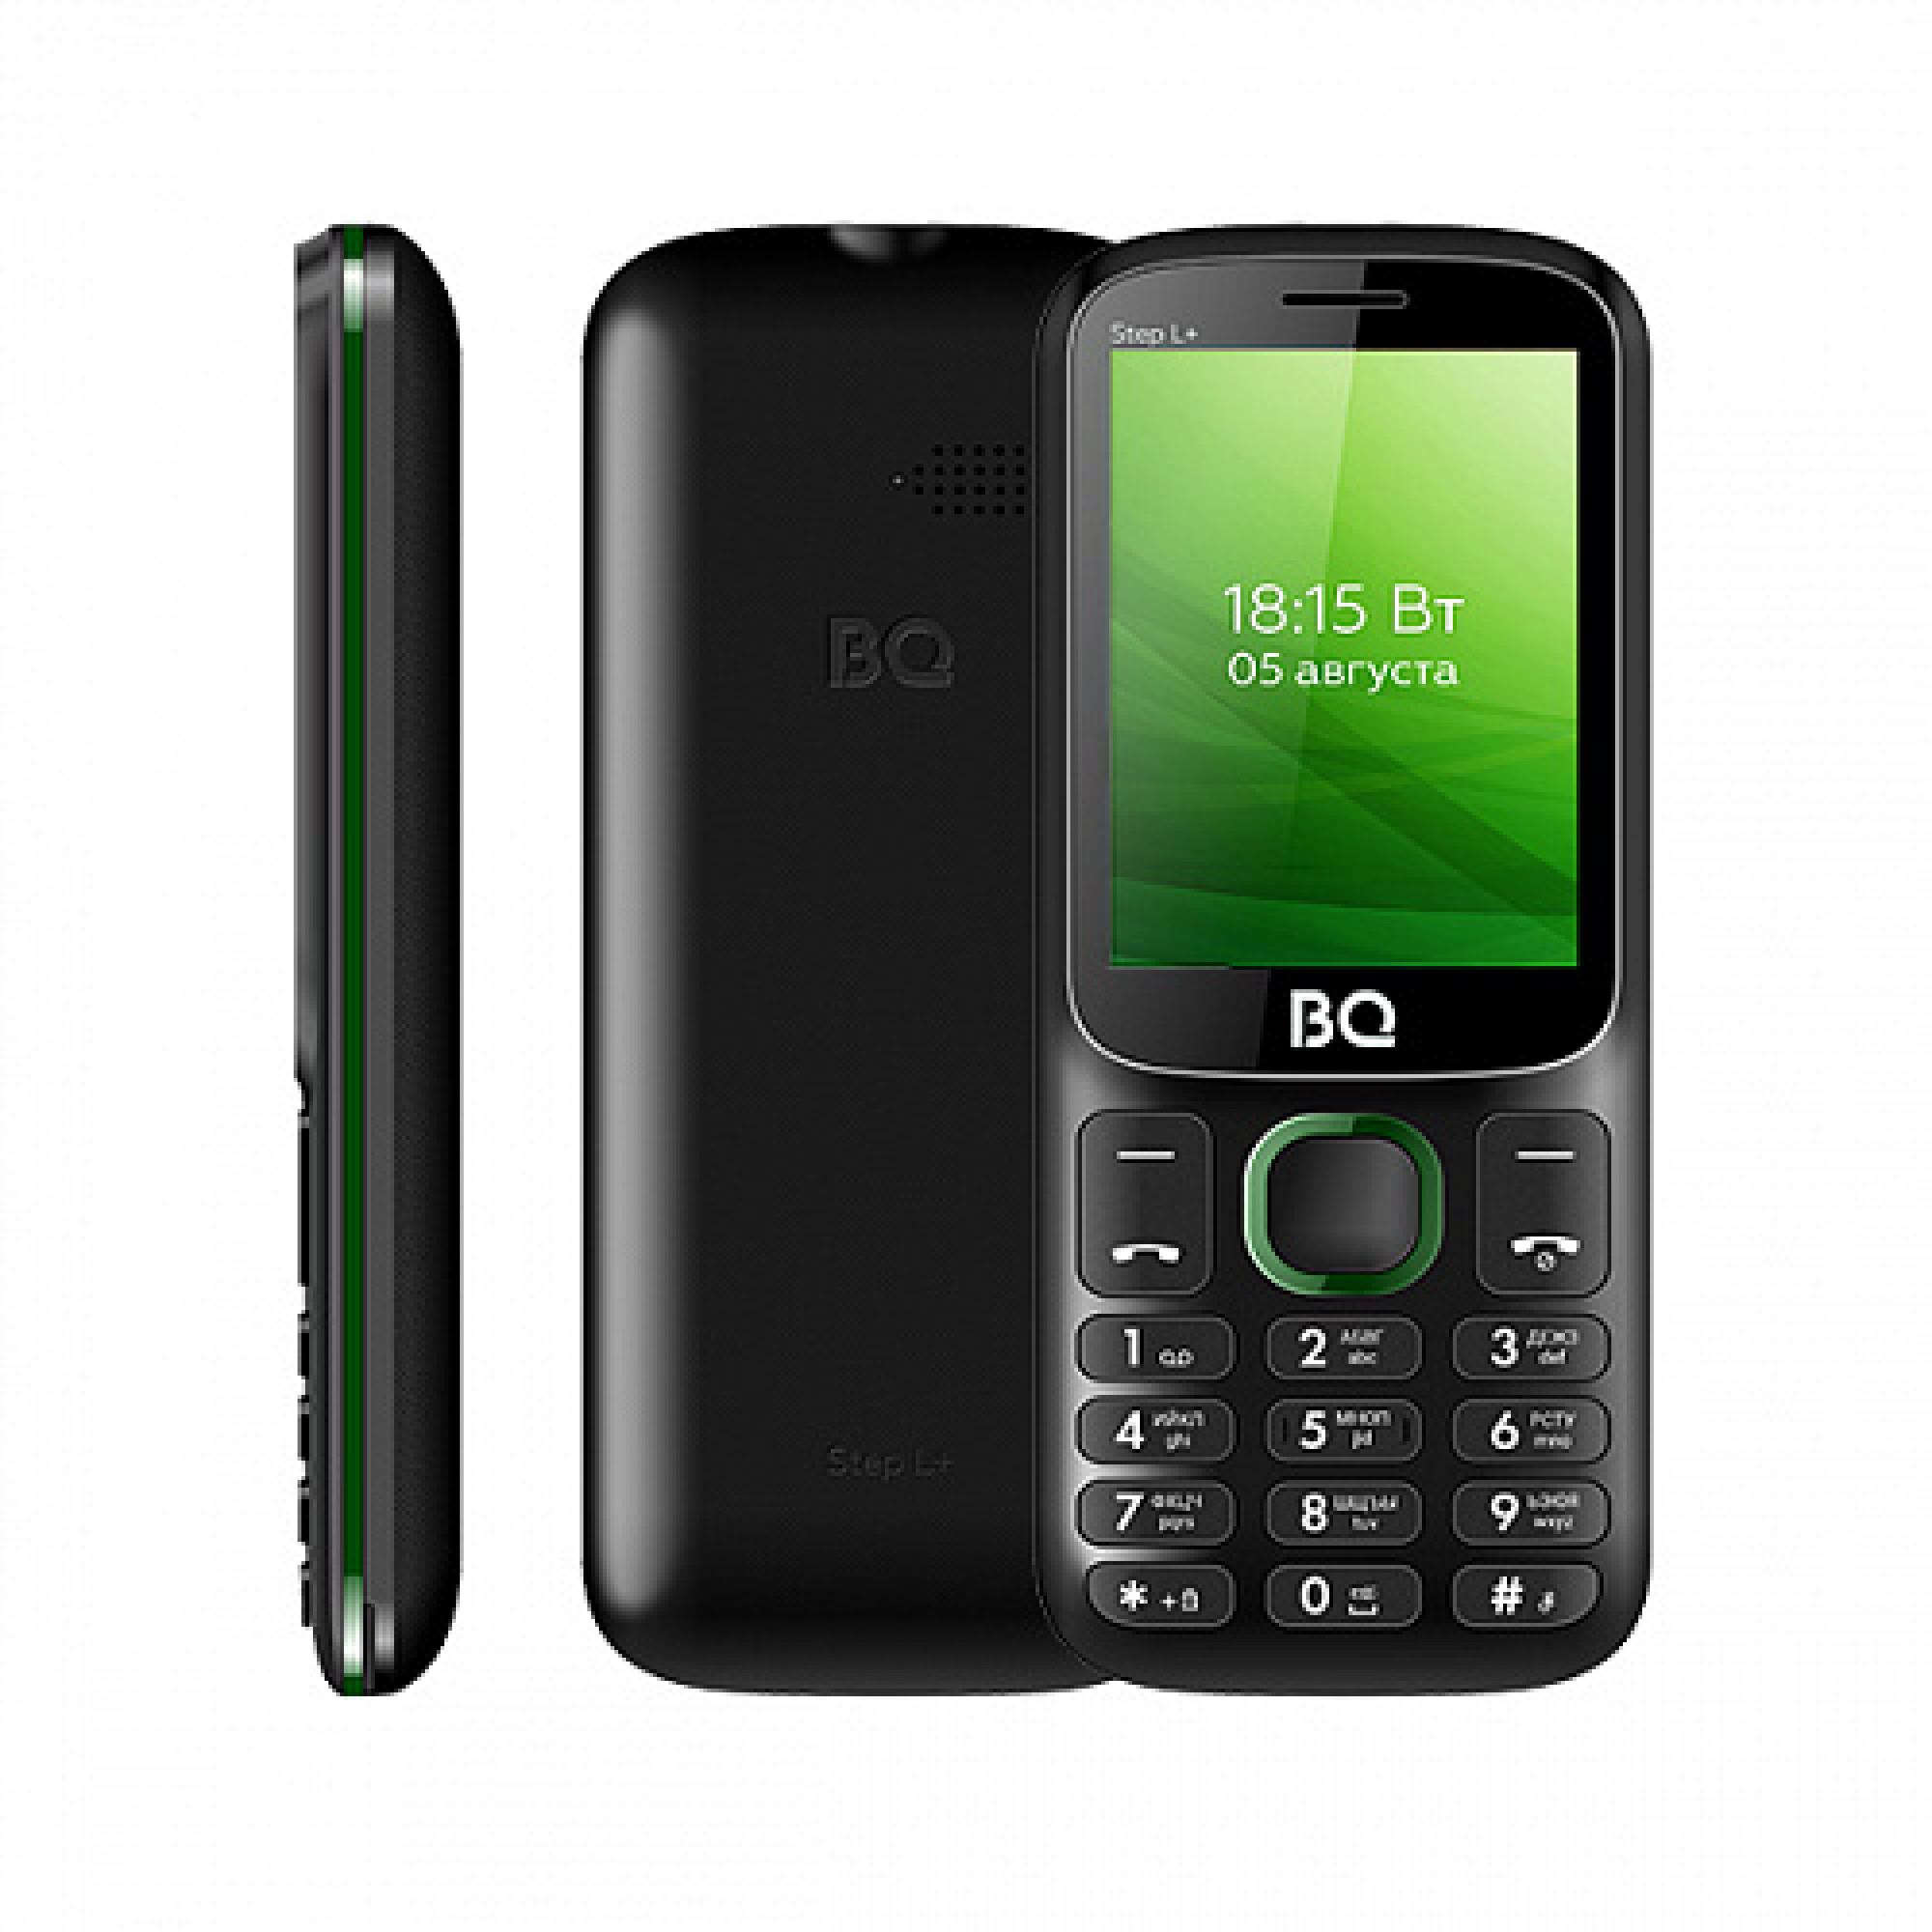 Мобильный телефон BQ BQ-2440 Step L+ (черный/зеленый)